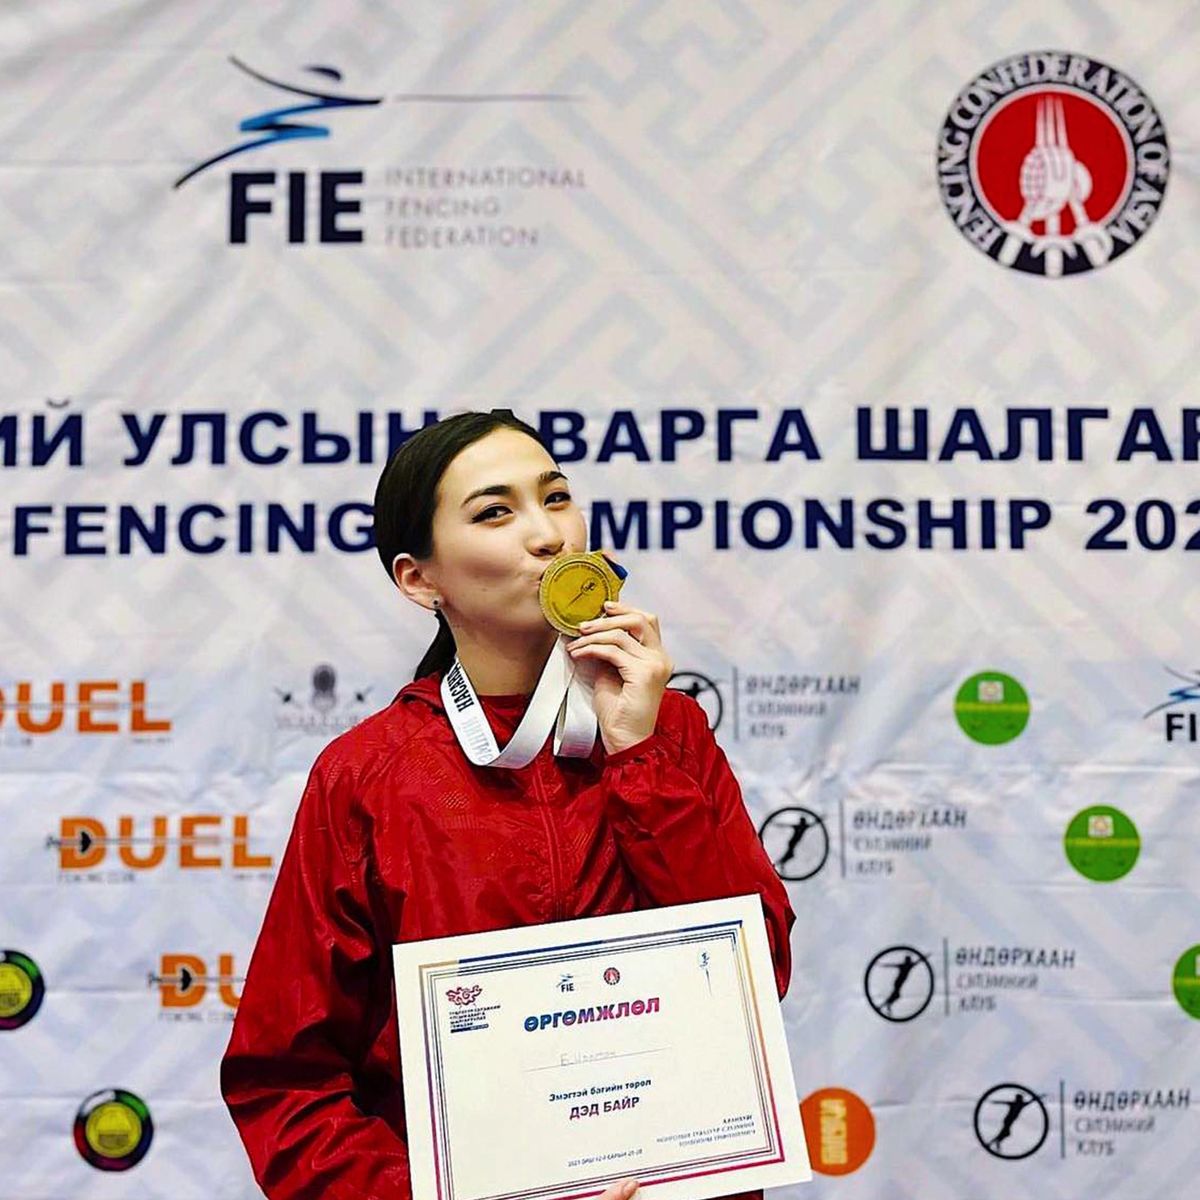 Монгол улсын Туялзуур сэлмийн спортын мастер. Улсын маш олон медалууд байгаа. 2017 онд Олон улсын шүүгч болсон. Цаашид олимпын шүүгч хийх зорилготой байгаа.